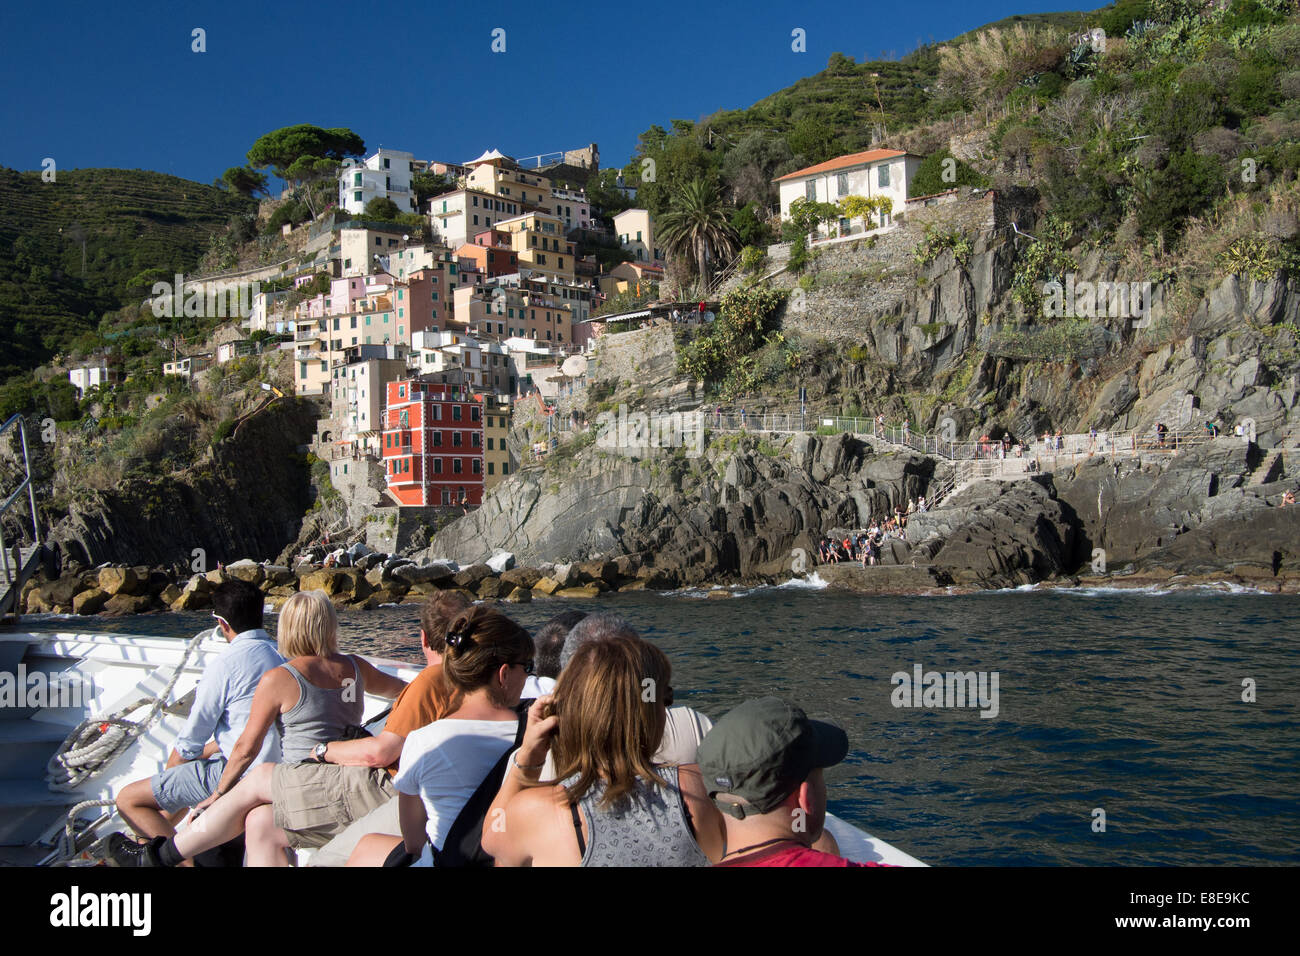 Riomaggiore, Cinque Terre, Liguria, Italy. Stock Photo